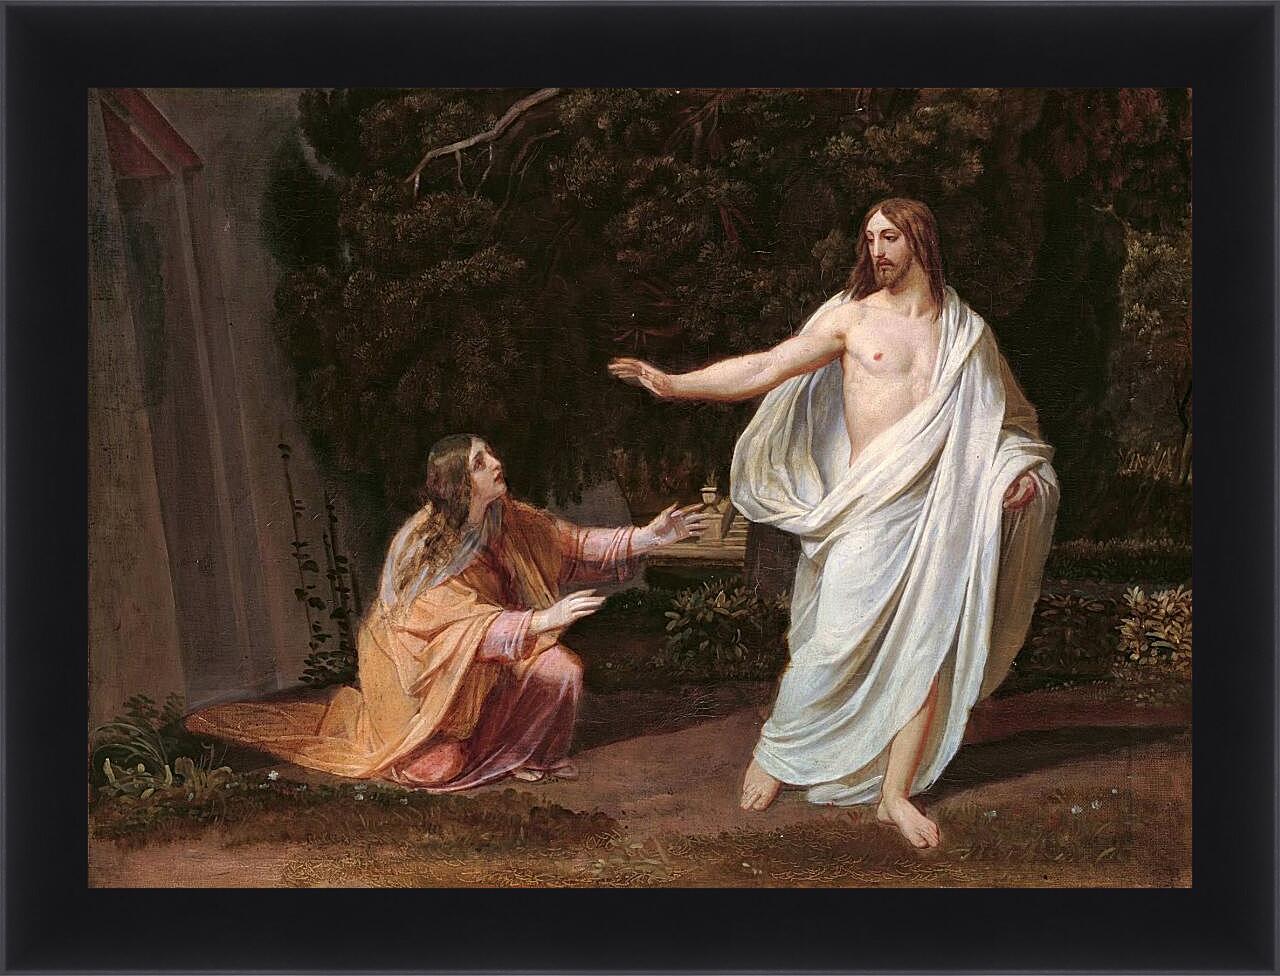 Картина в раме - Явление Христа Марии Магдалине после Воскресения. Иванов Александр